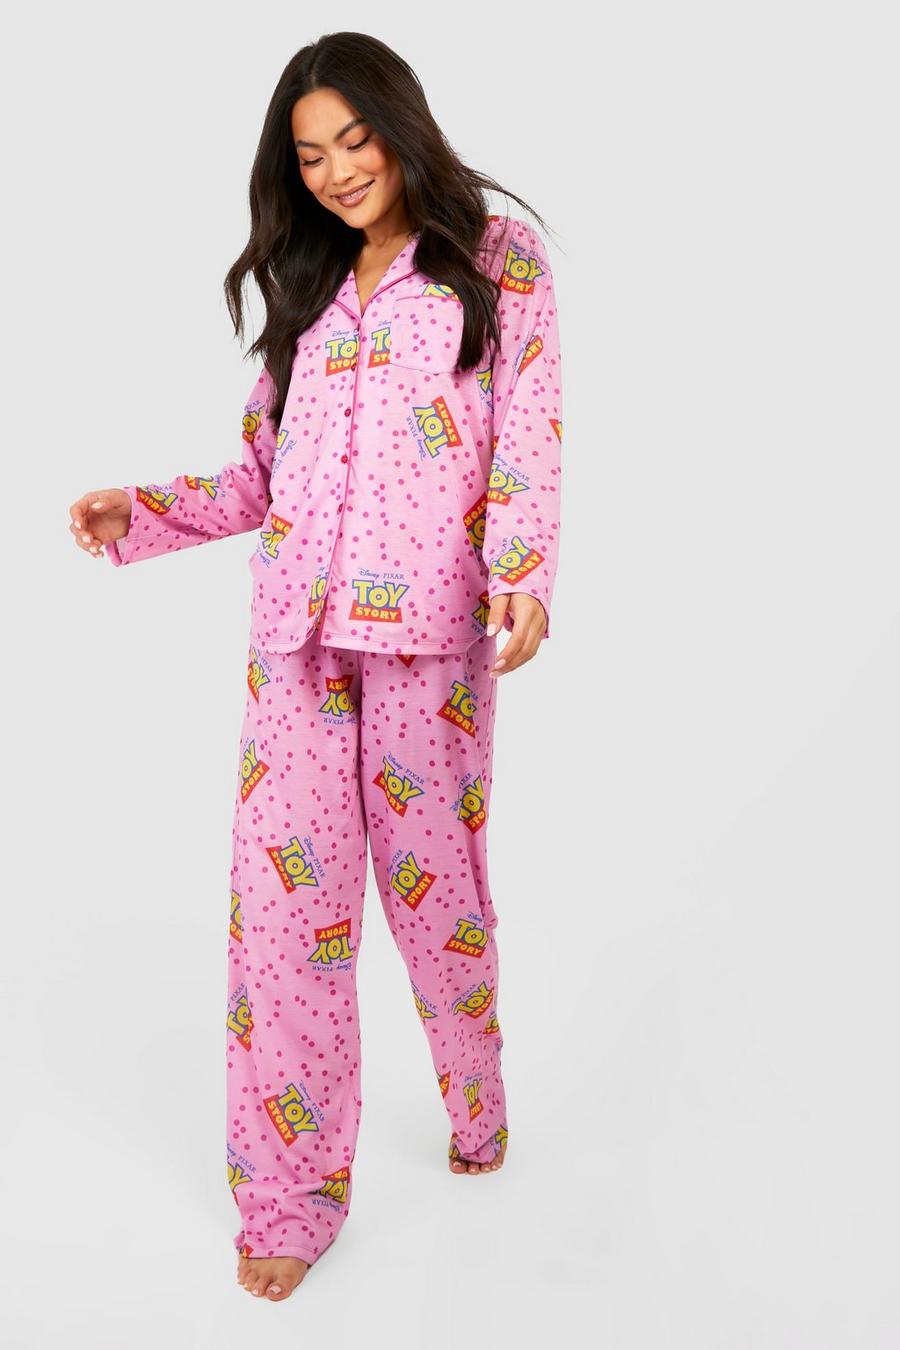 Pijama de Disney con pantalón, botones y estampado de Toy Story, Pink image number 1